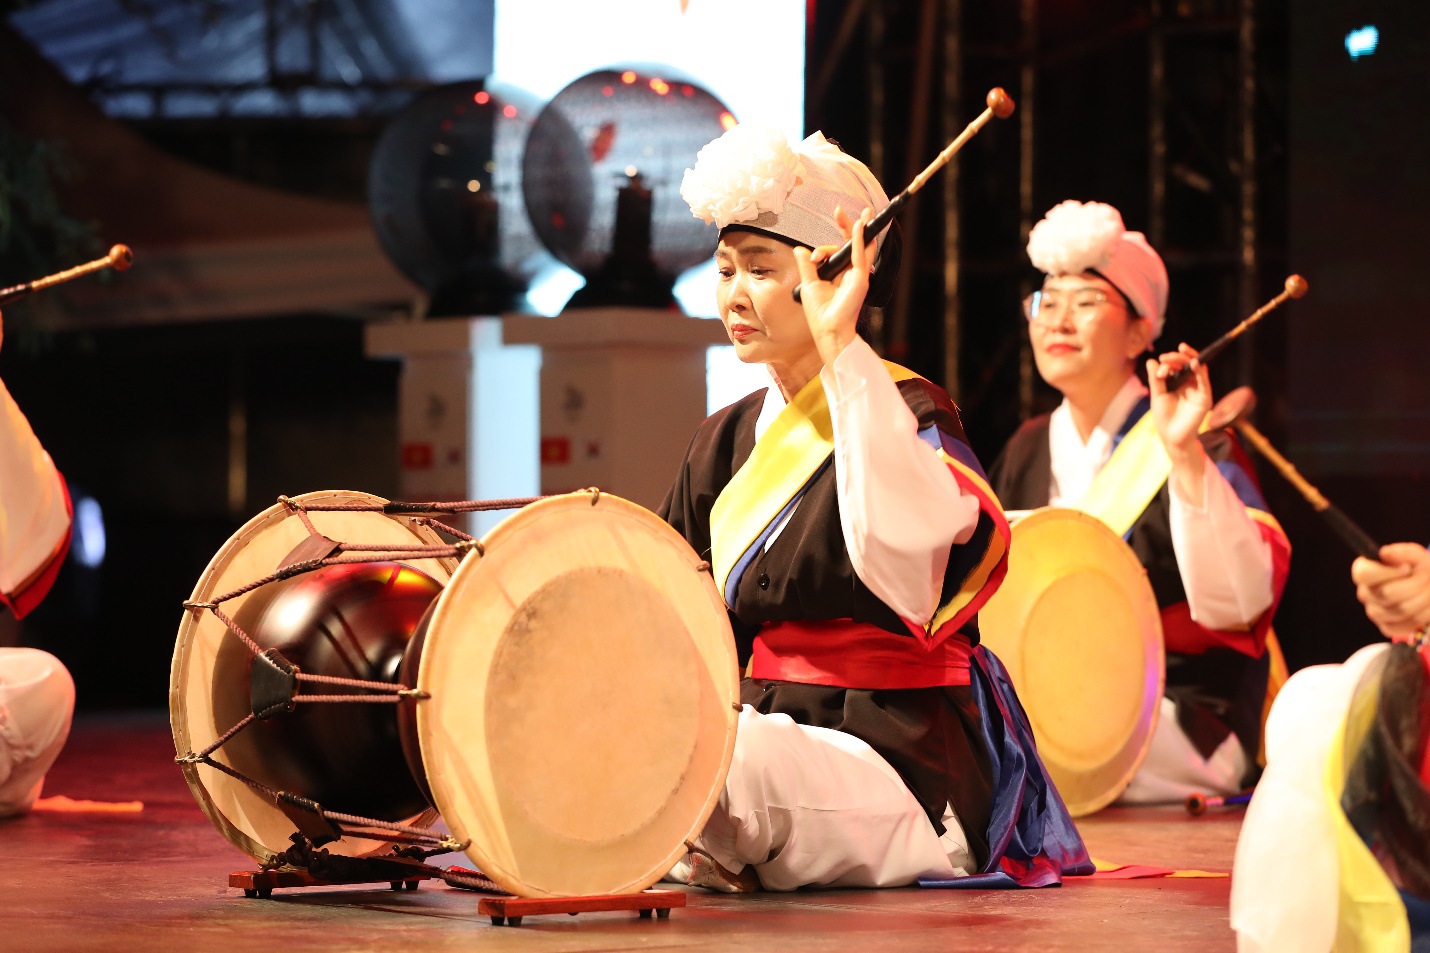 Nghệ thuật múa trống độc đáo của Hàn Quốc (Samulnori) là màn biểu diễn ấn tượng, khai mạc sự kiện “Con đường văn hoá hữu nghị Việt - Hàn”  (Ảnh VietnamEvents)